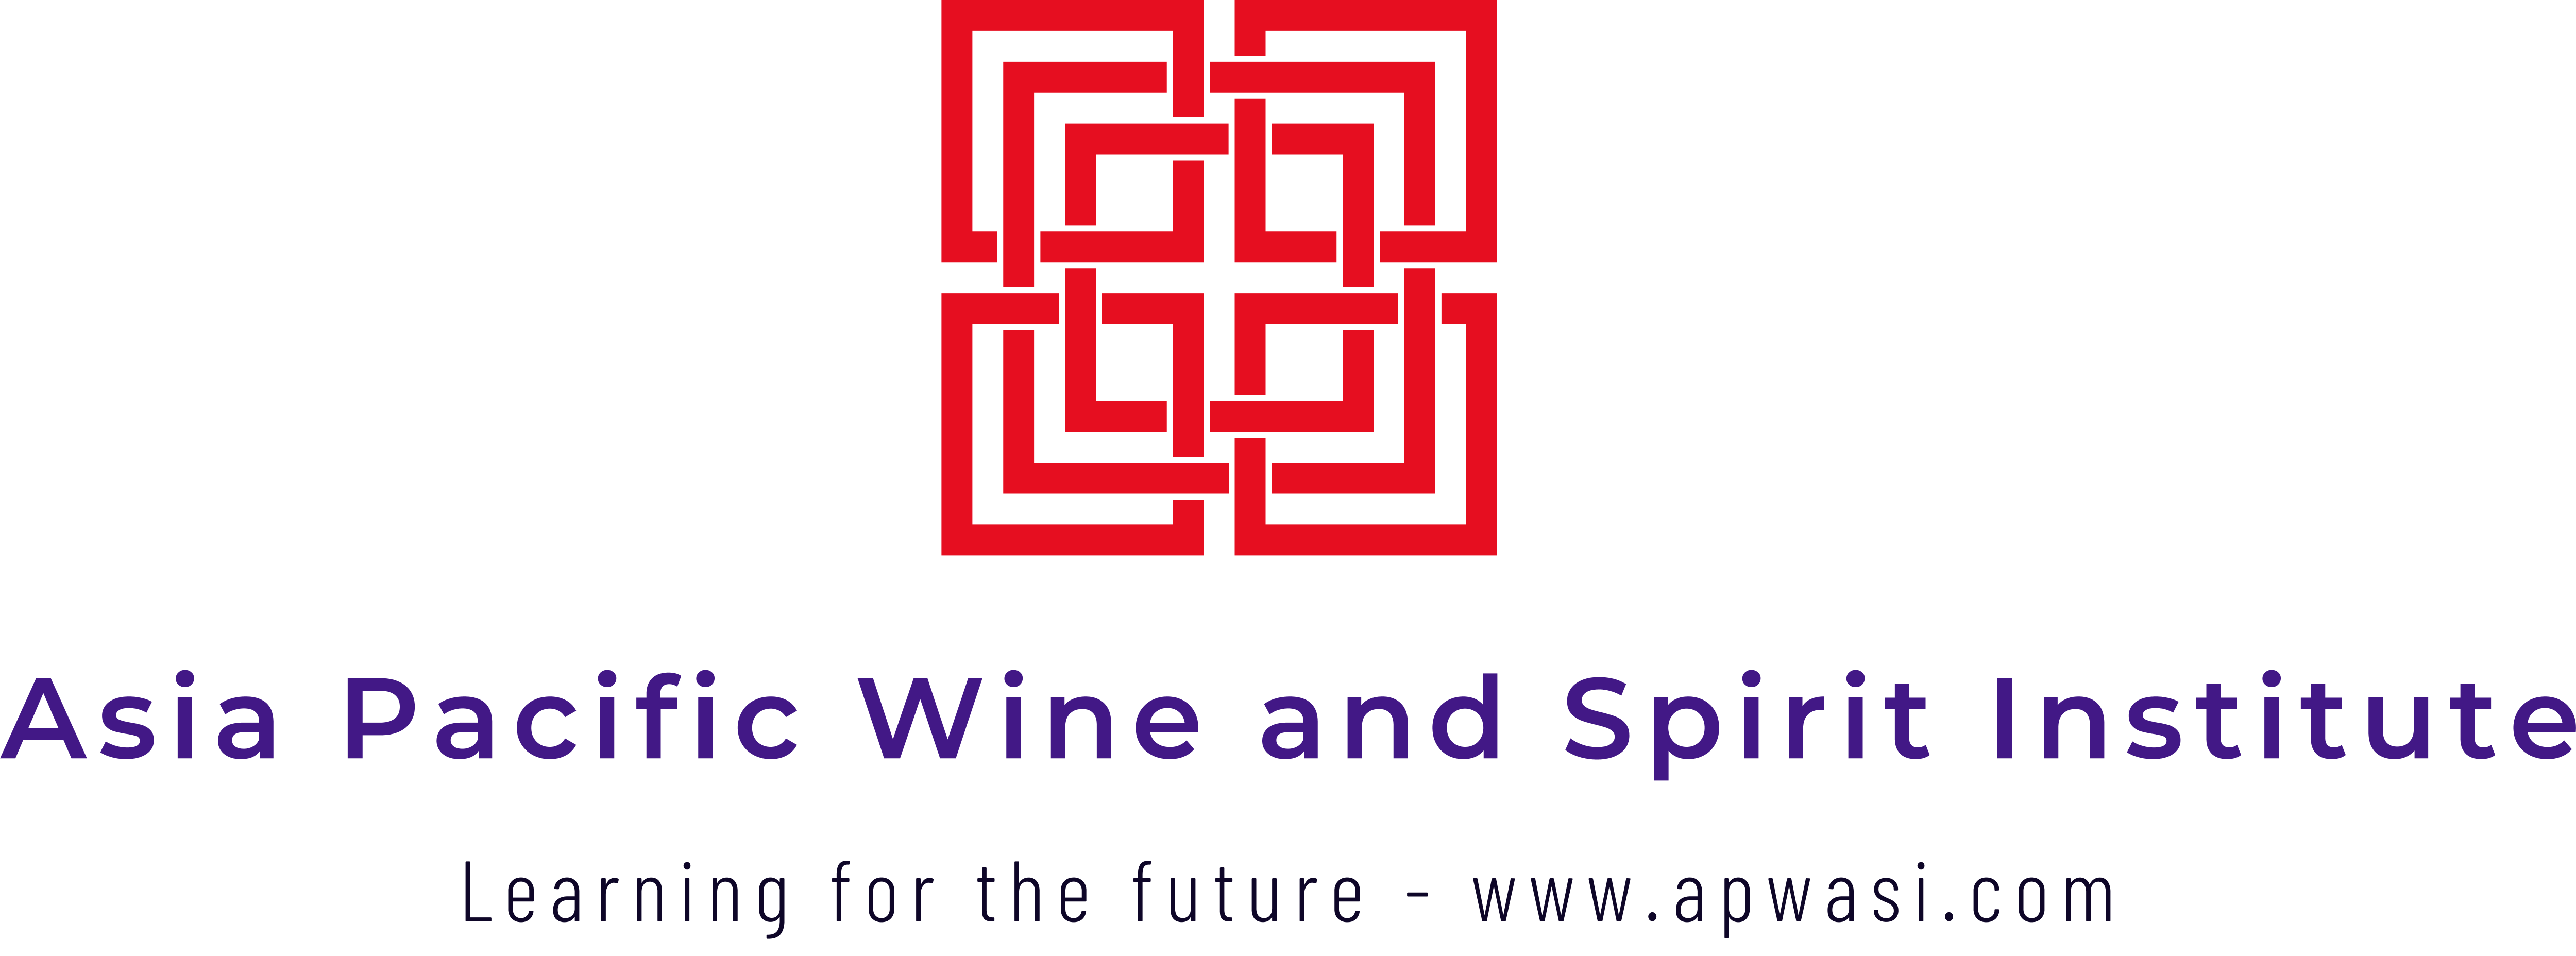 Asia Pacific Wine and Spirit Institute